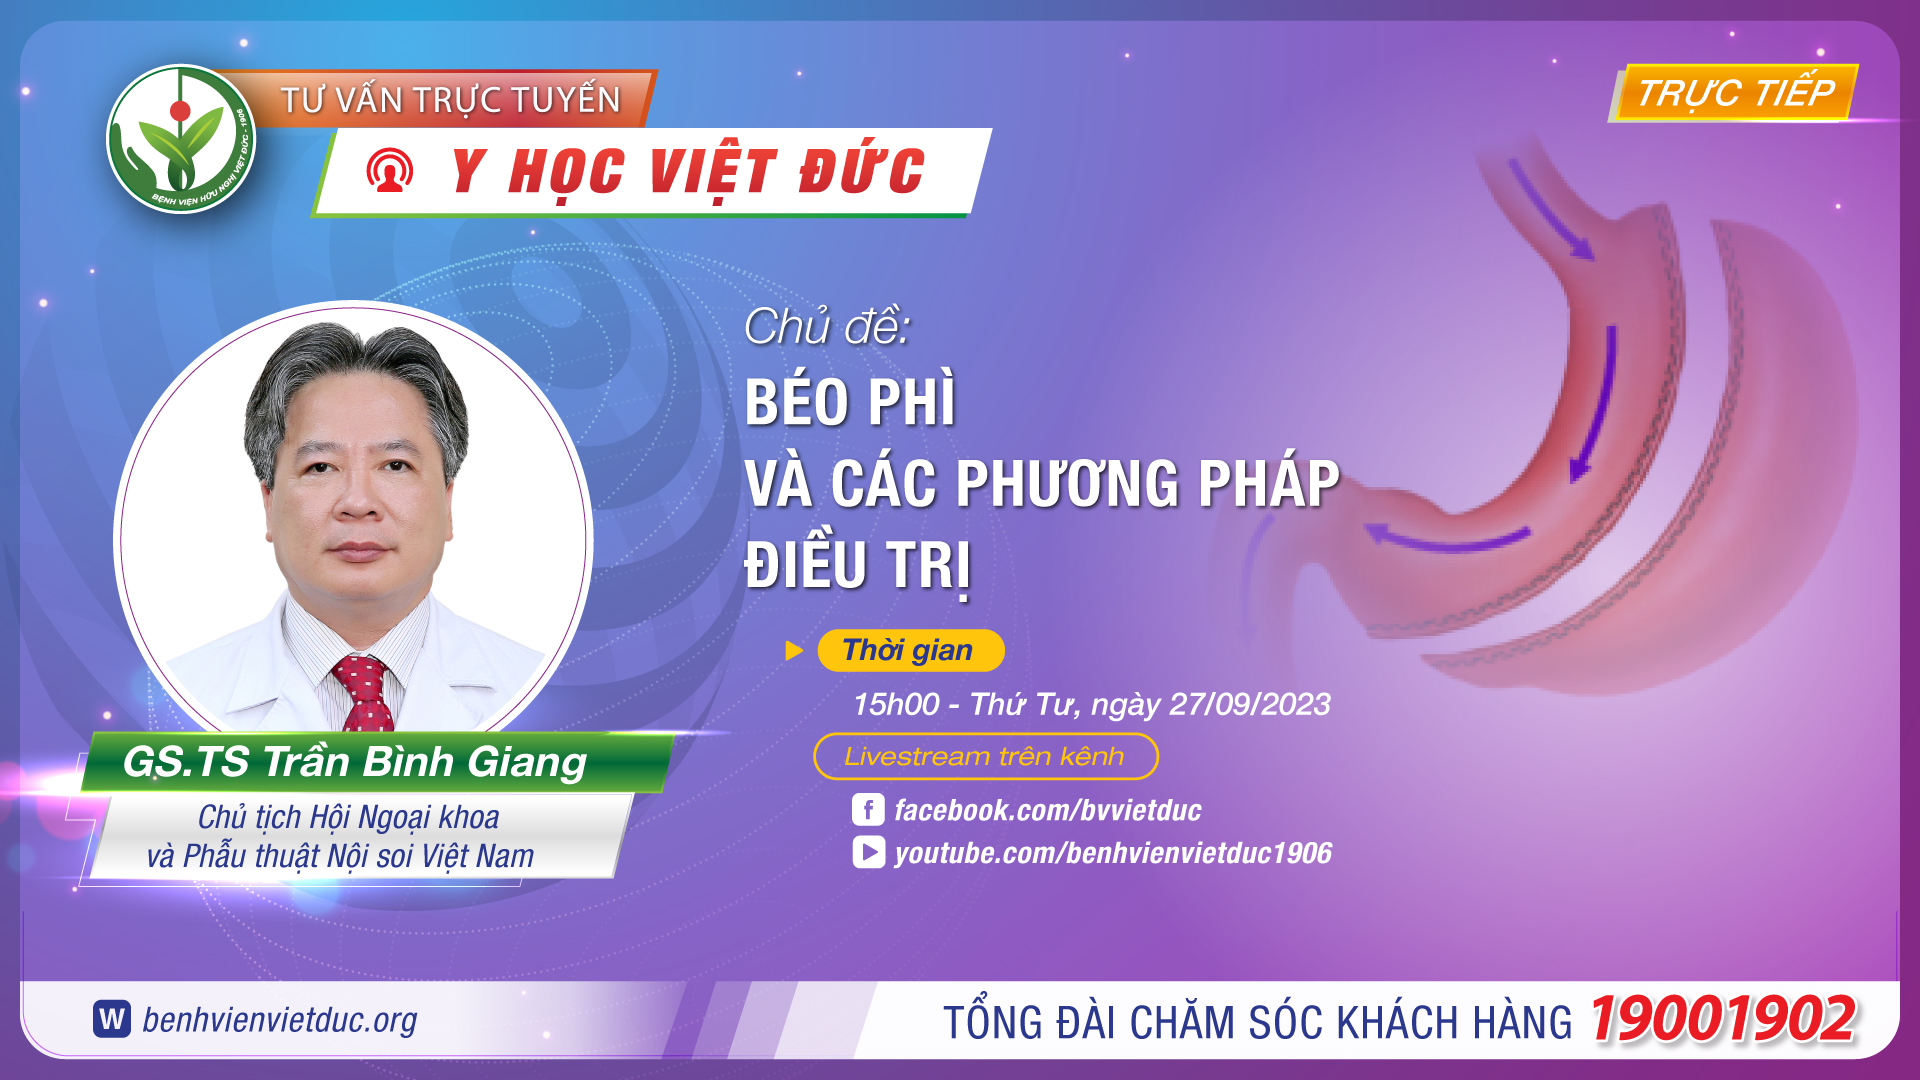 [Livestream] Chương trình tư vấn trực tuyến Y học Việt Đức: Chủ đề “Béo phì và các phương pháp điều trị”